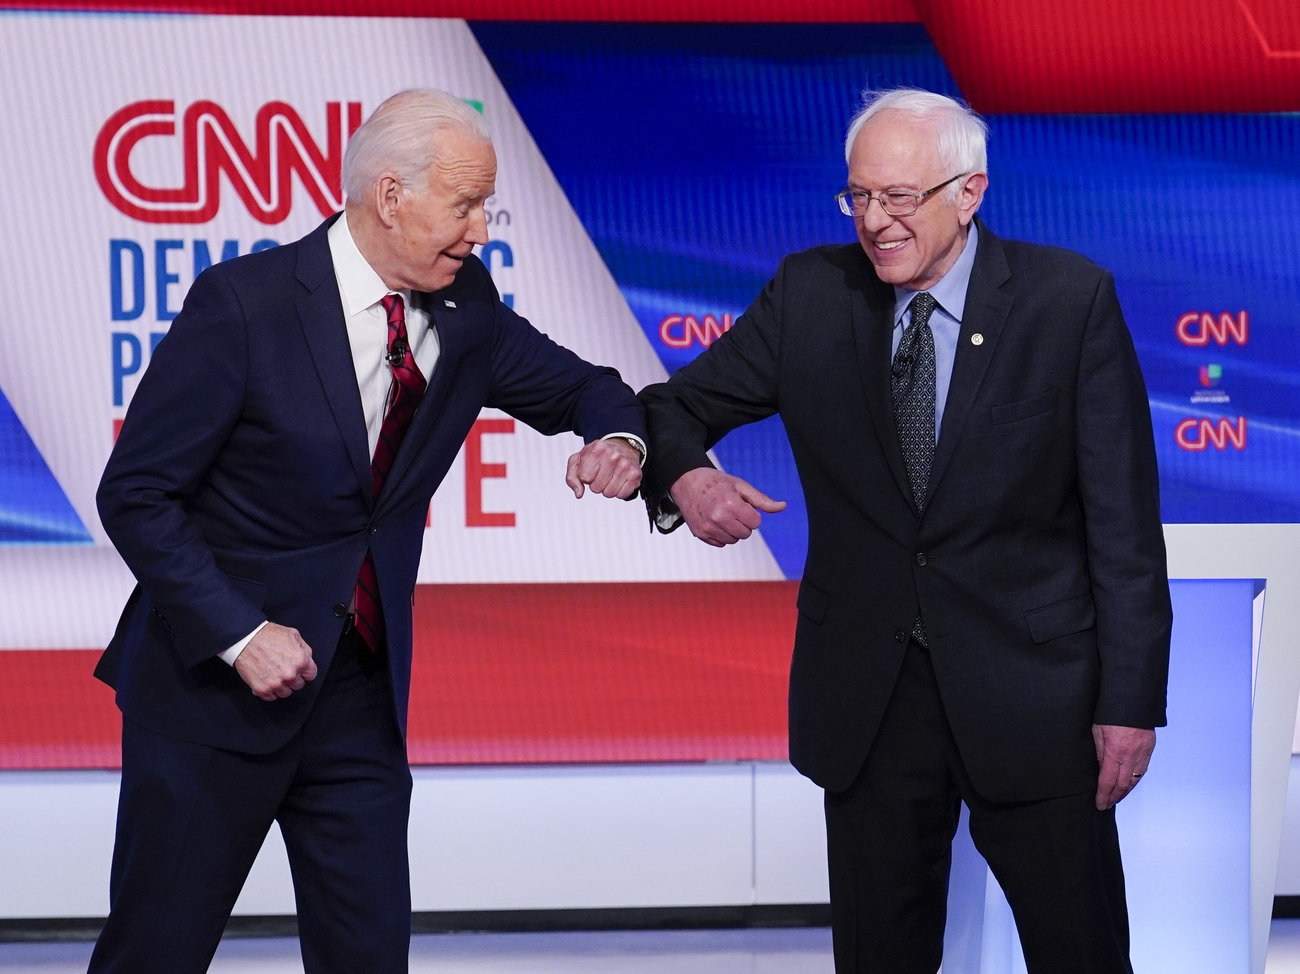 4 Takeaways From The Biden-Sanders Debate During The Coronavirus Crisis